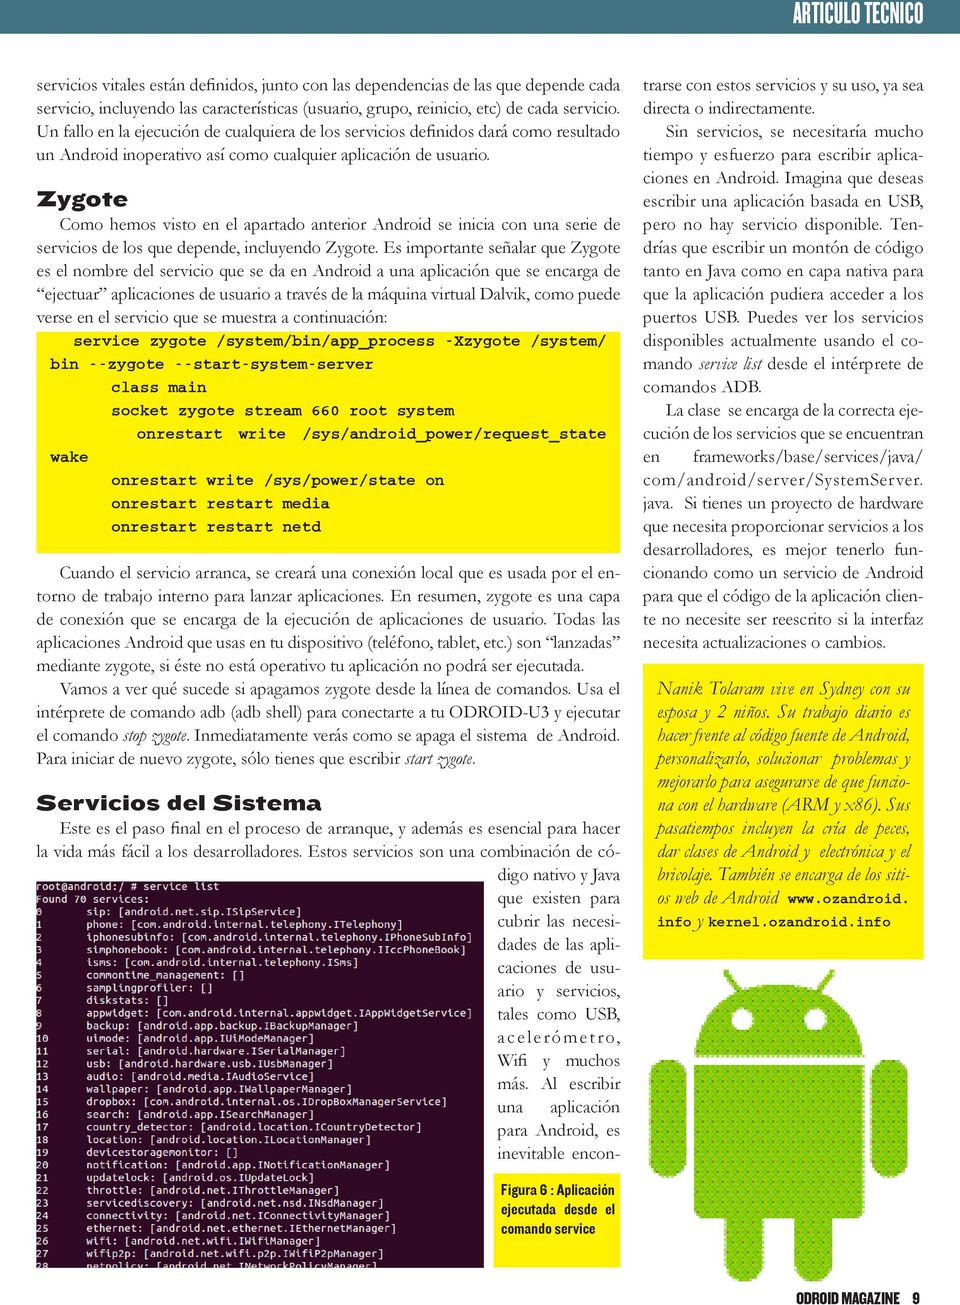 Zygote Como hemos visto en el apartado anterior Android se inicia con una serie de servicios de los que depende, incluyendo Zygote.